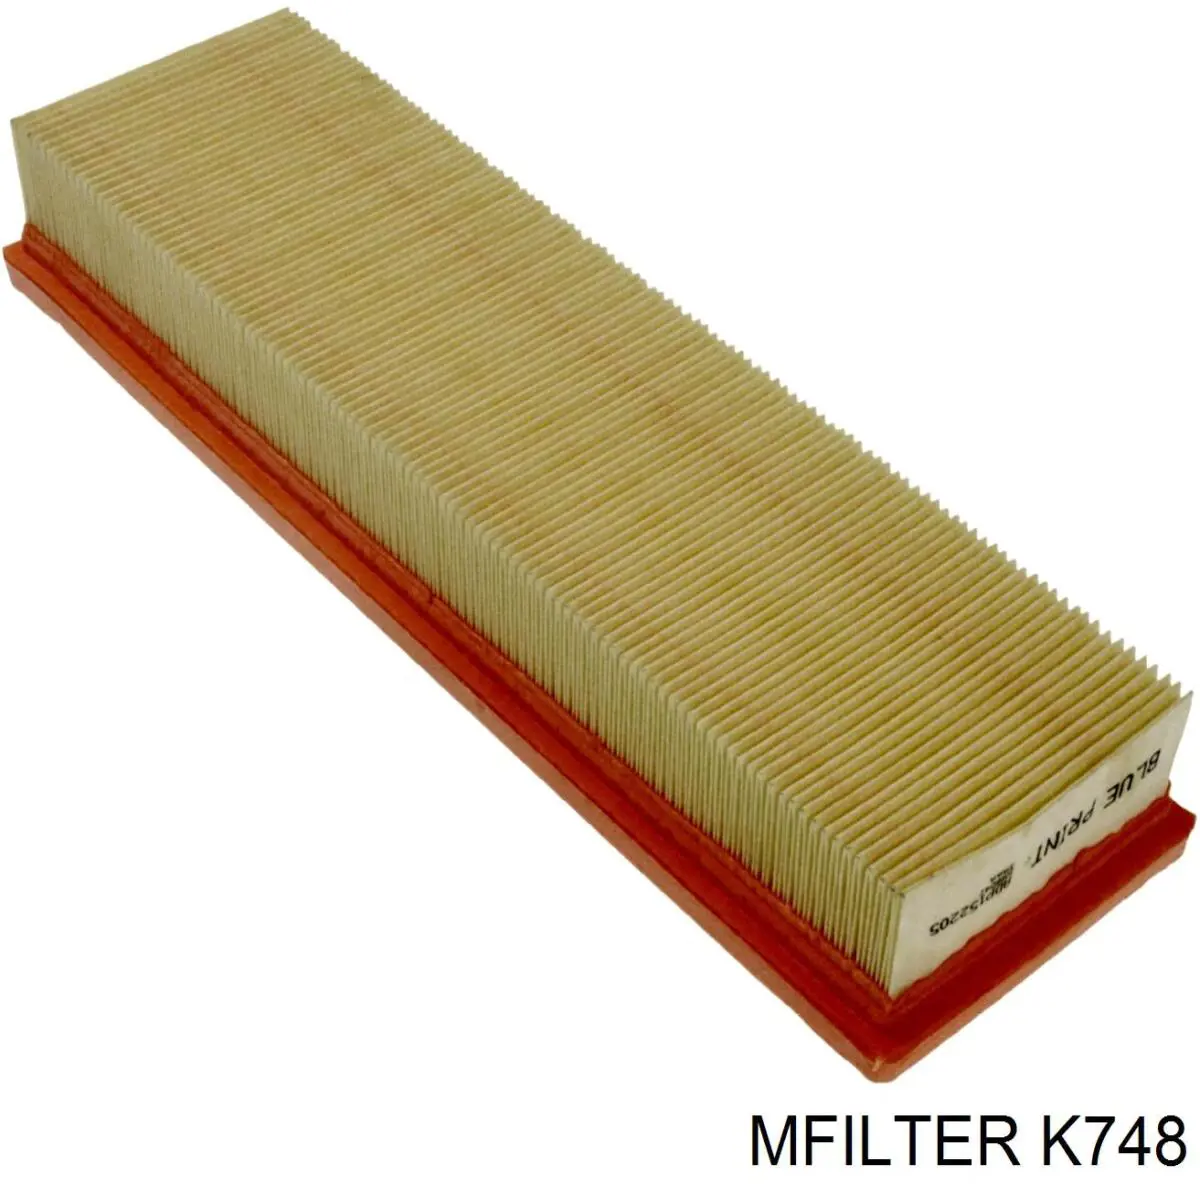 K748 Mfilter воздушный фильтр